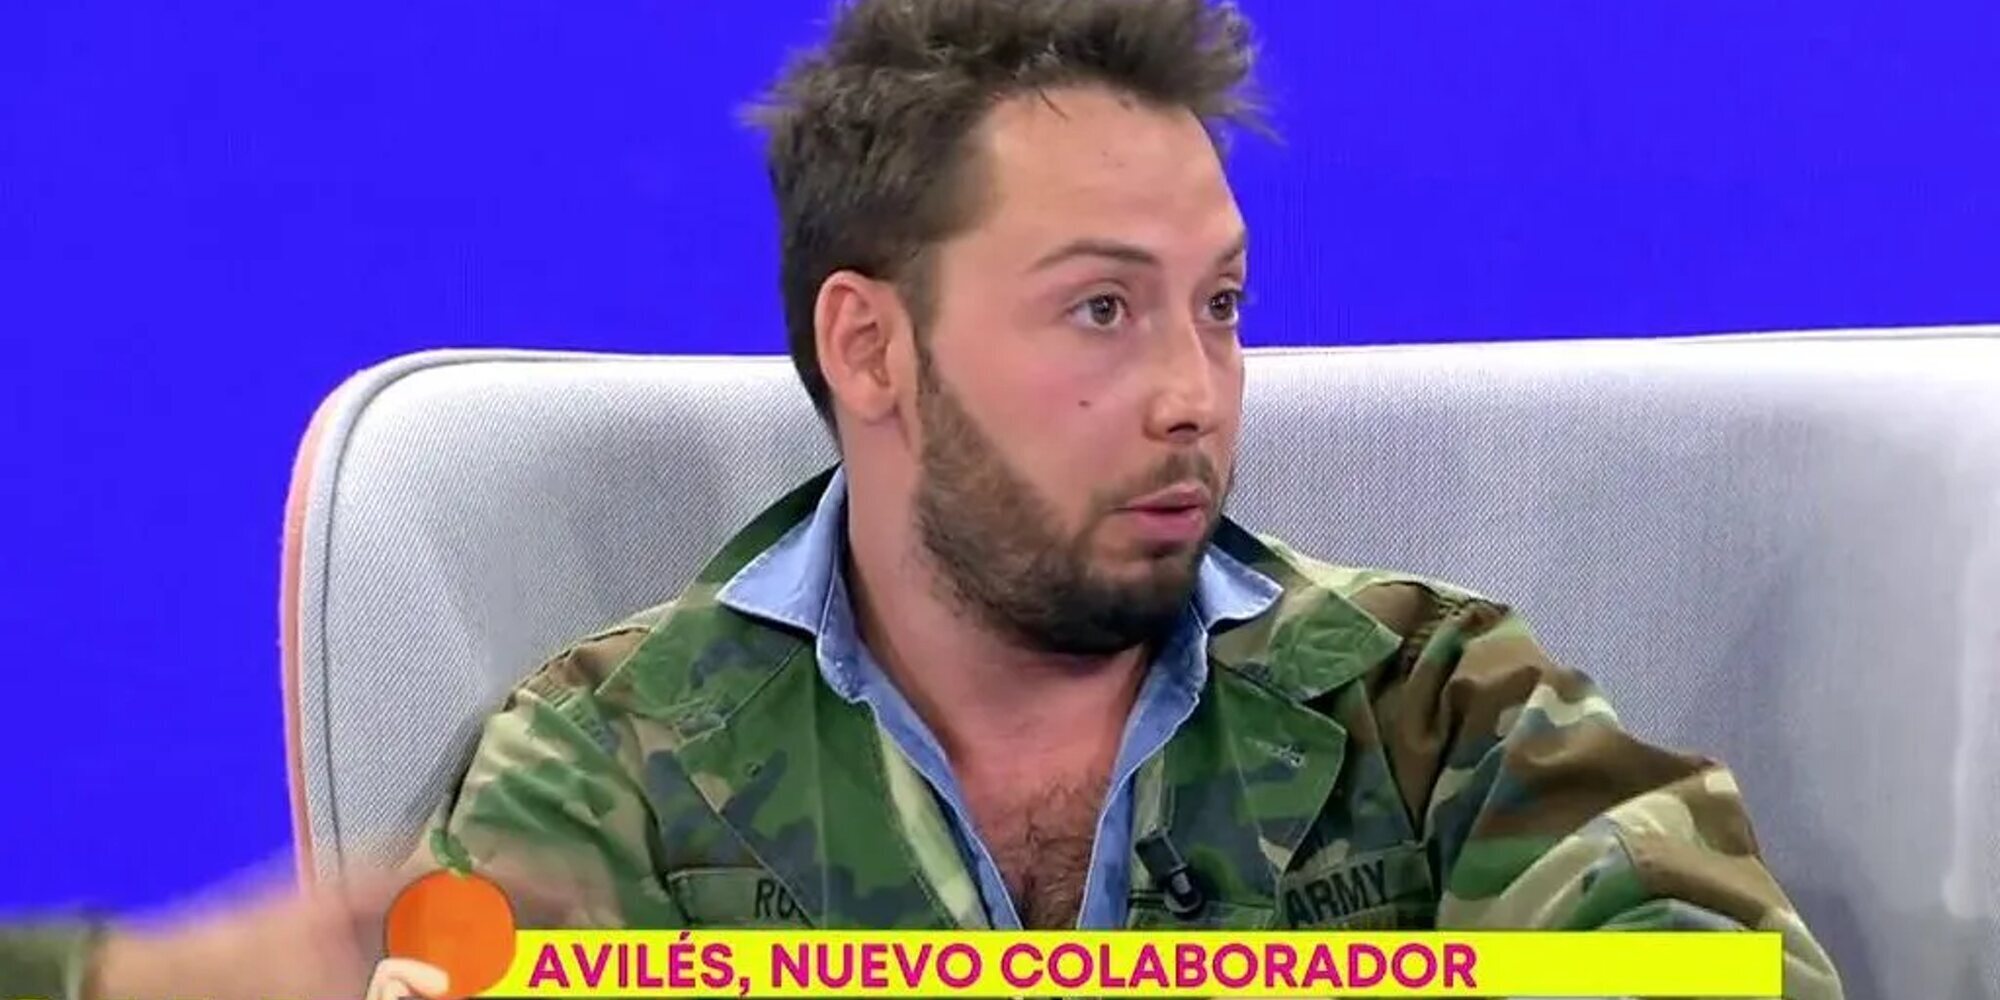 José Antonio Avilés, nuevo colaborador de 'Sálvame' tras sus últimas polémicas